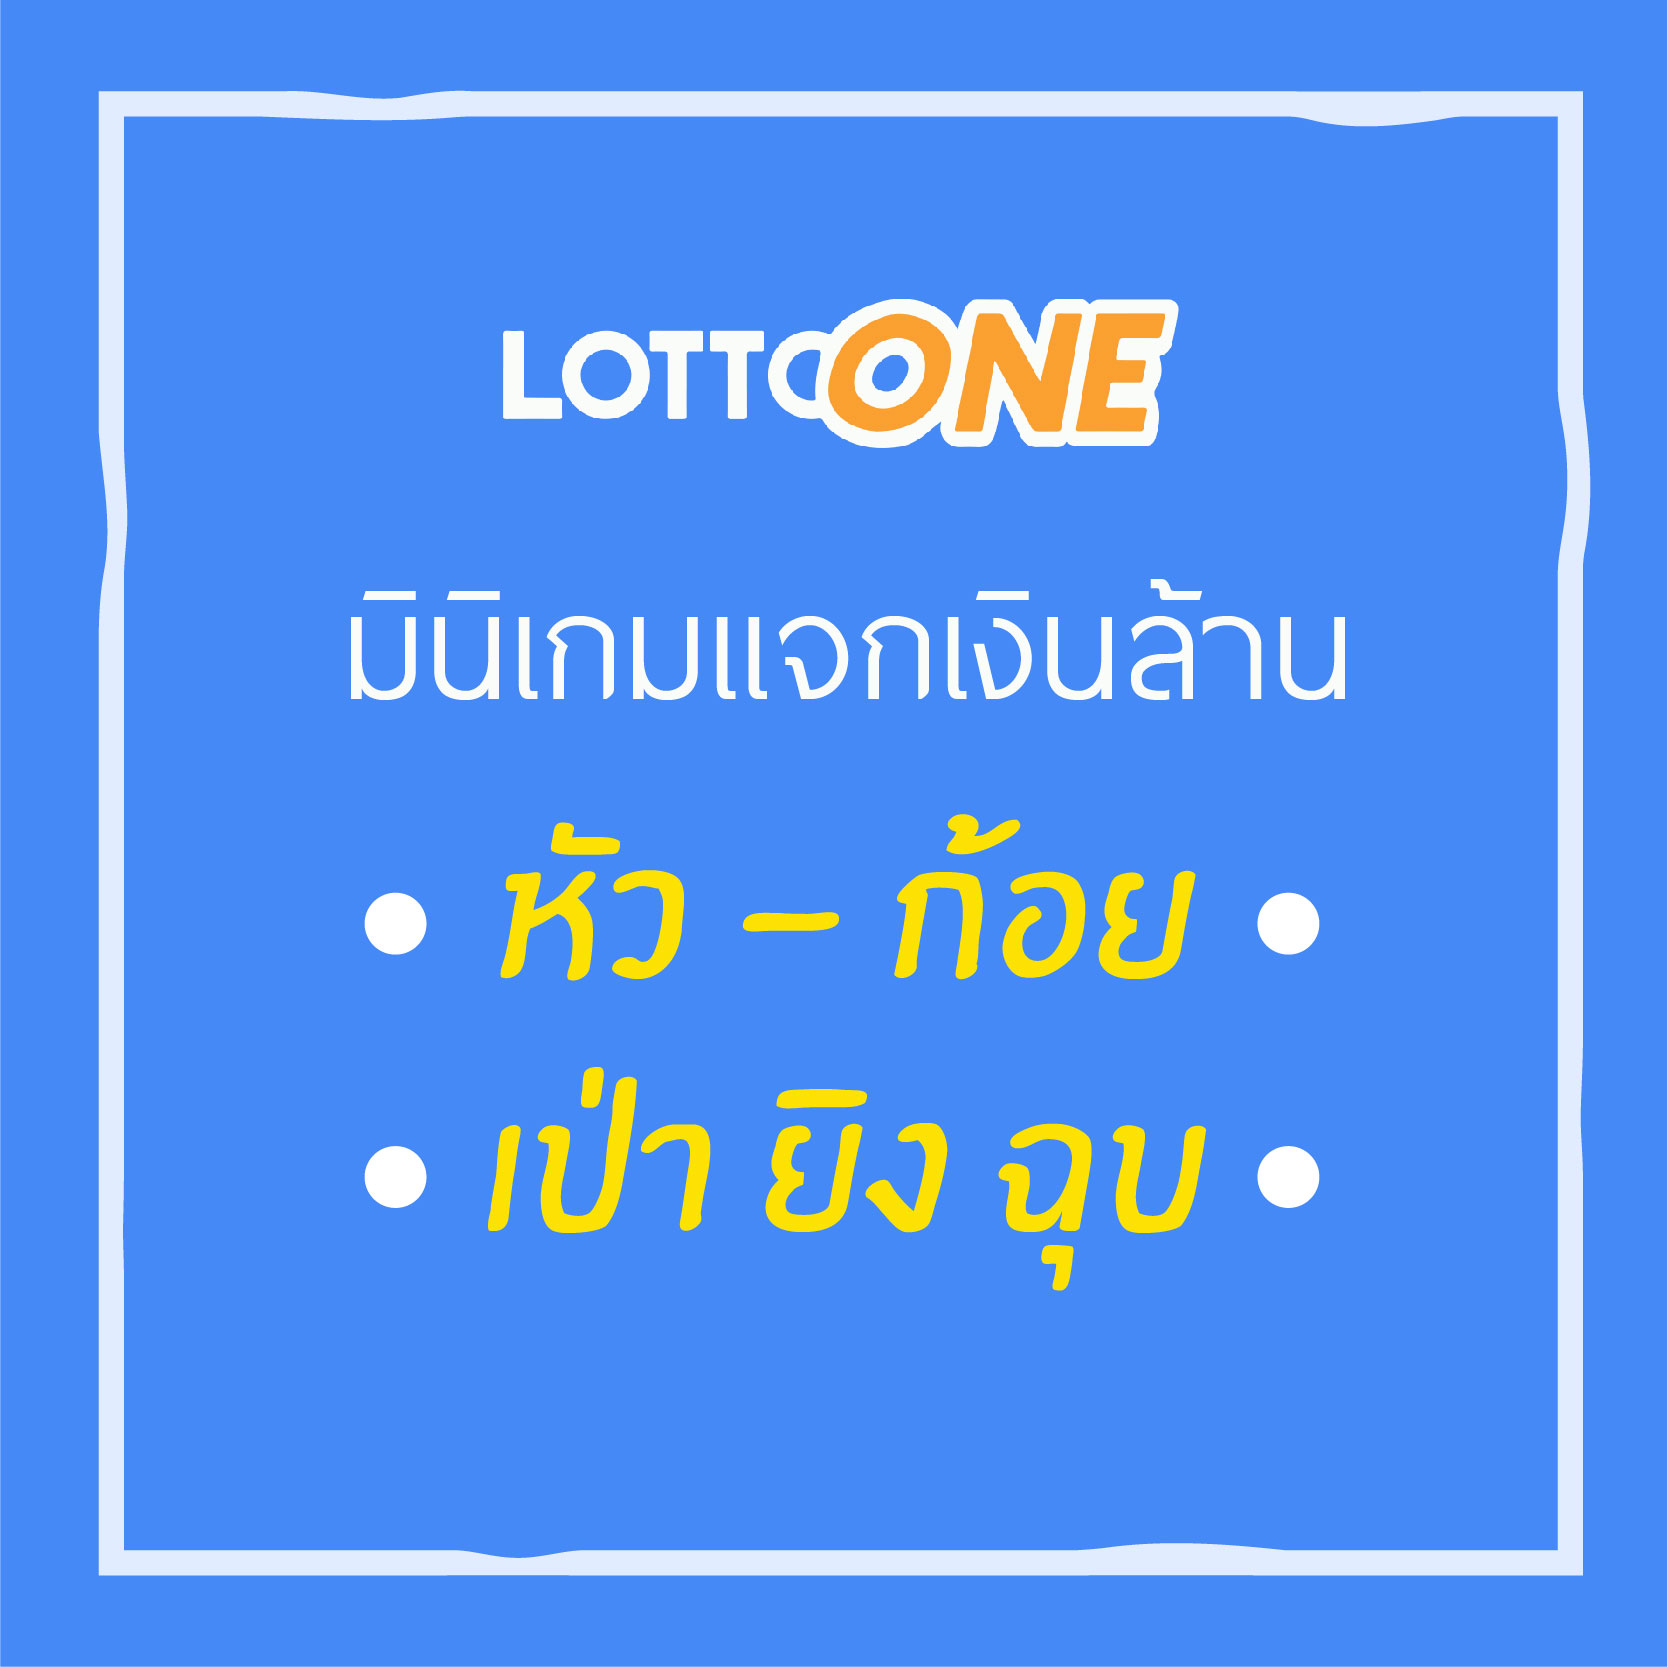 lottoone.net